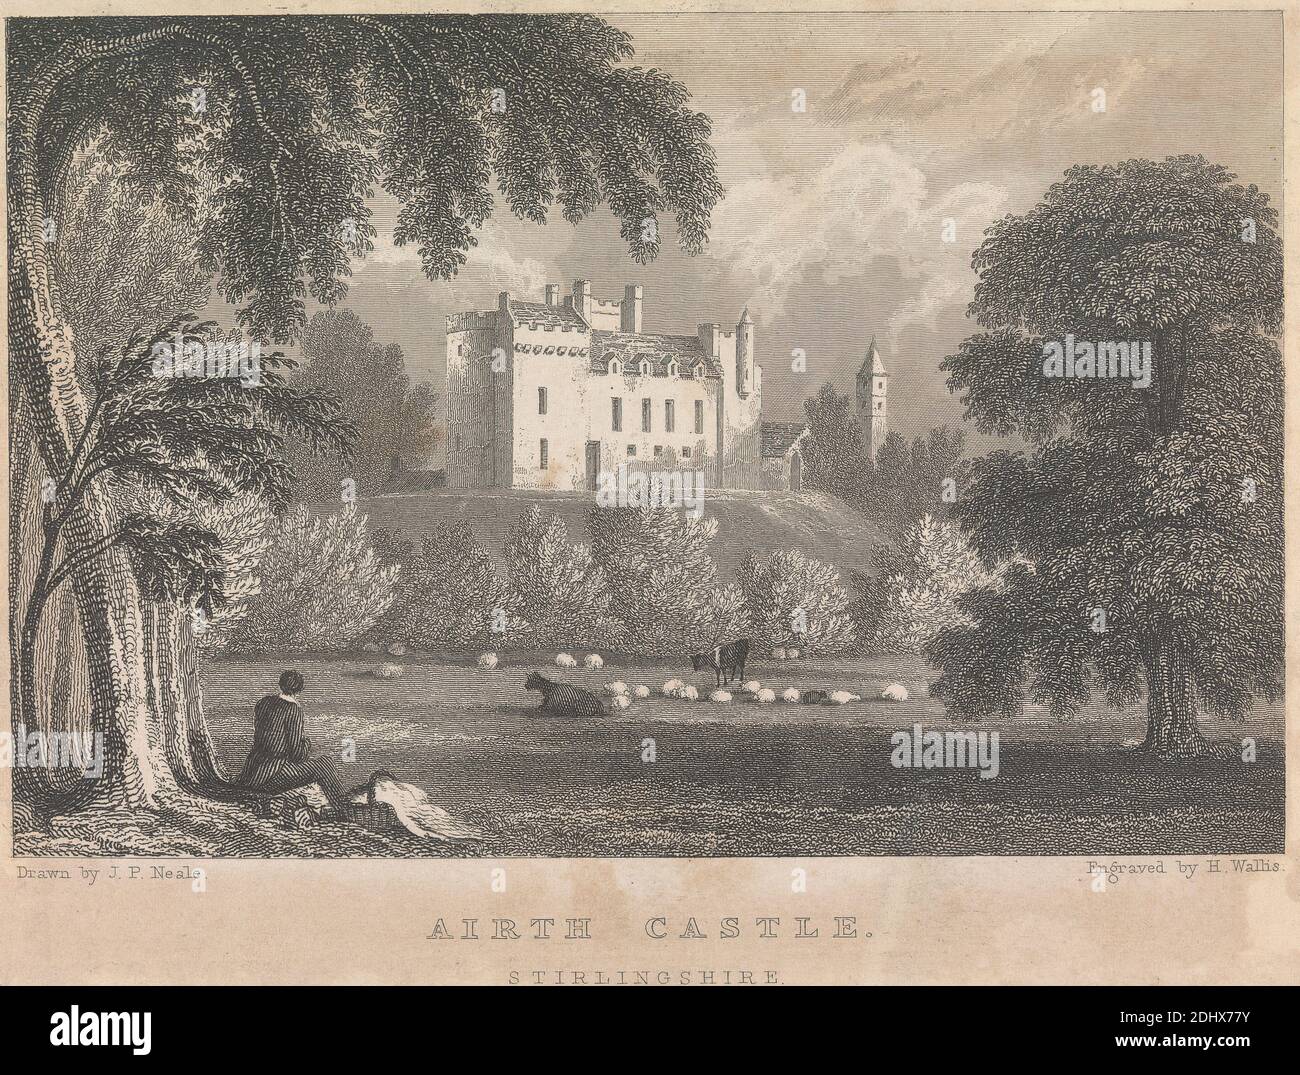 Airth Castle, Stirlingshire; página 4 (volumen uno), impresión hecha por Henry Wallis, 1805–1890, británico, después de John Preston Neale, 1771/80–1847, británico, 1831, grabado Foto de stock